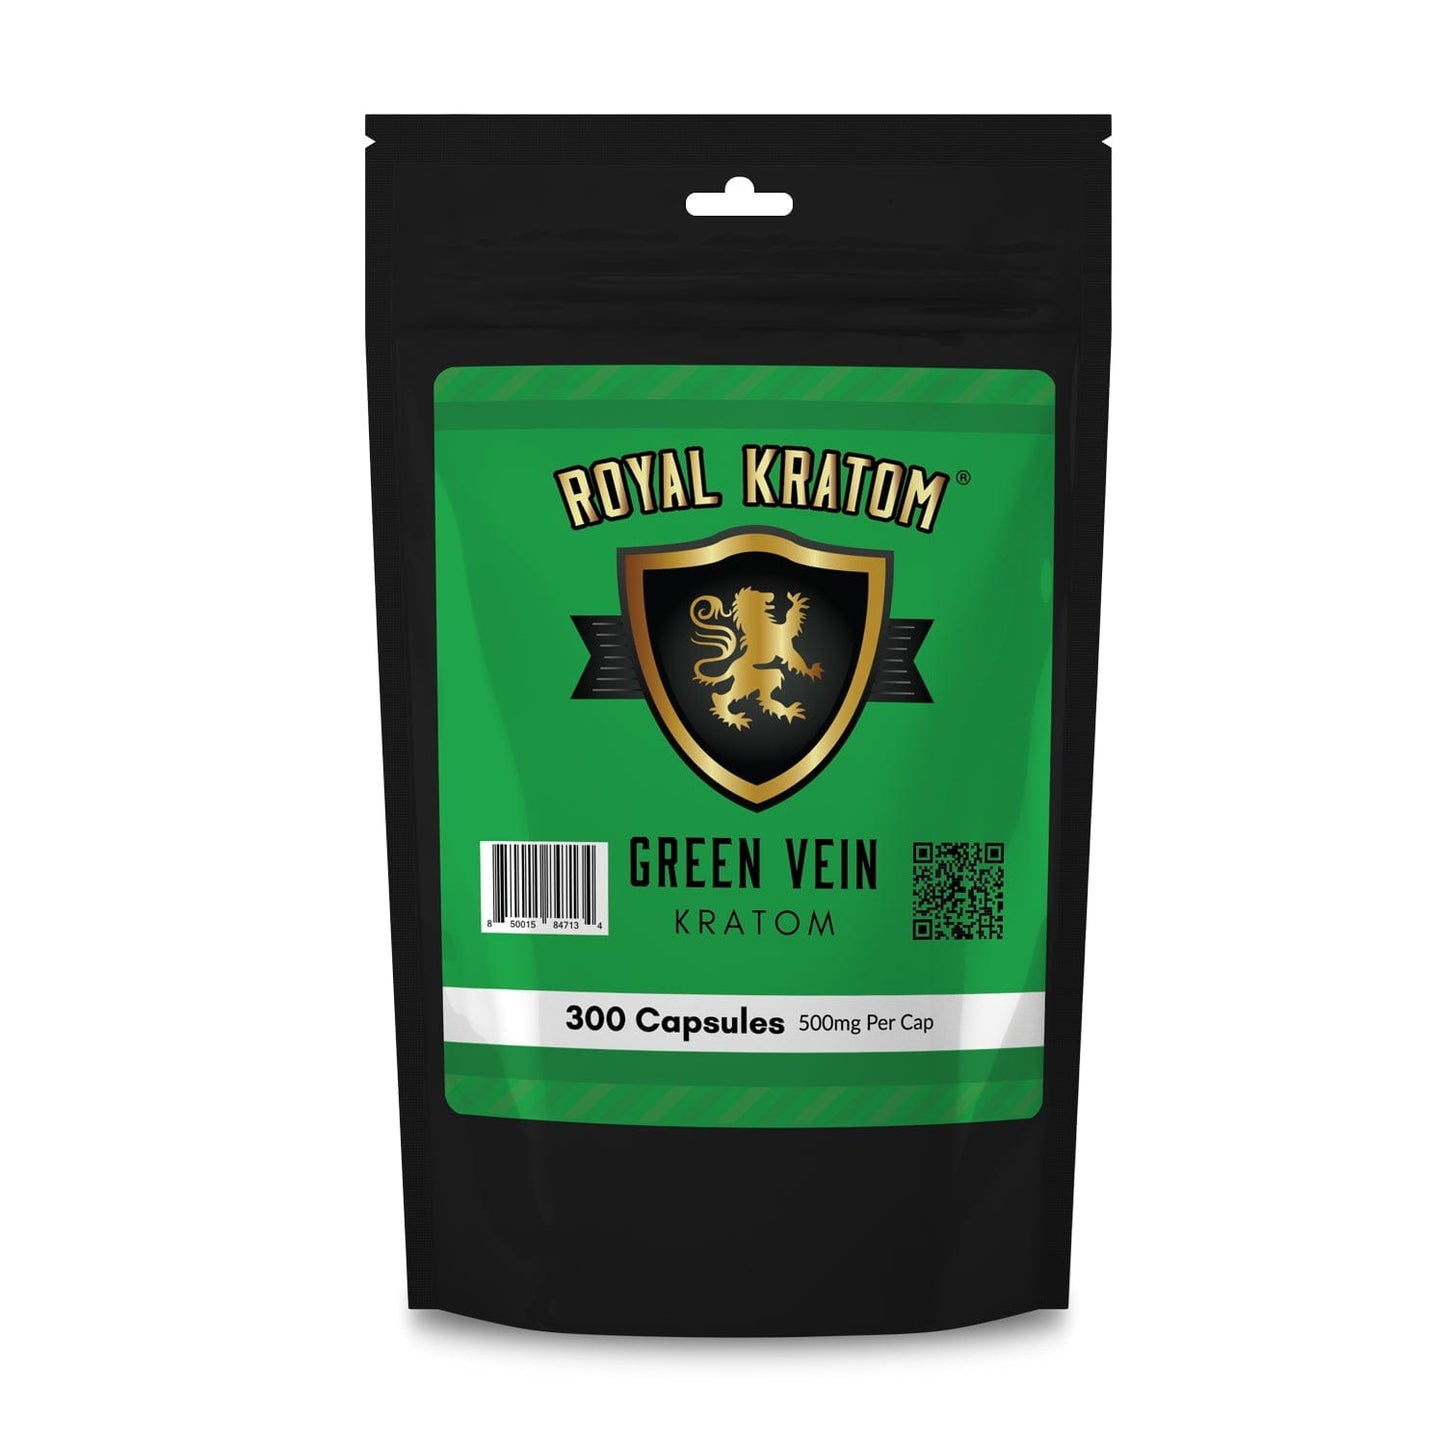 Royal Kratom green vein kratom capsules 300 count package